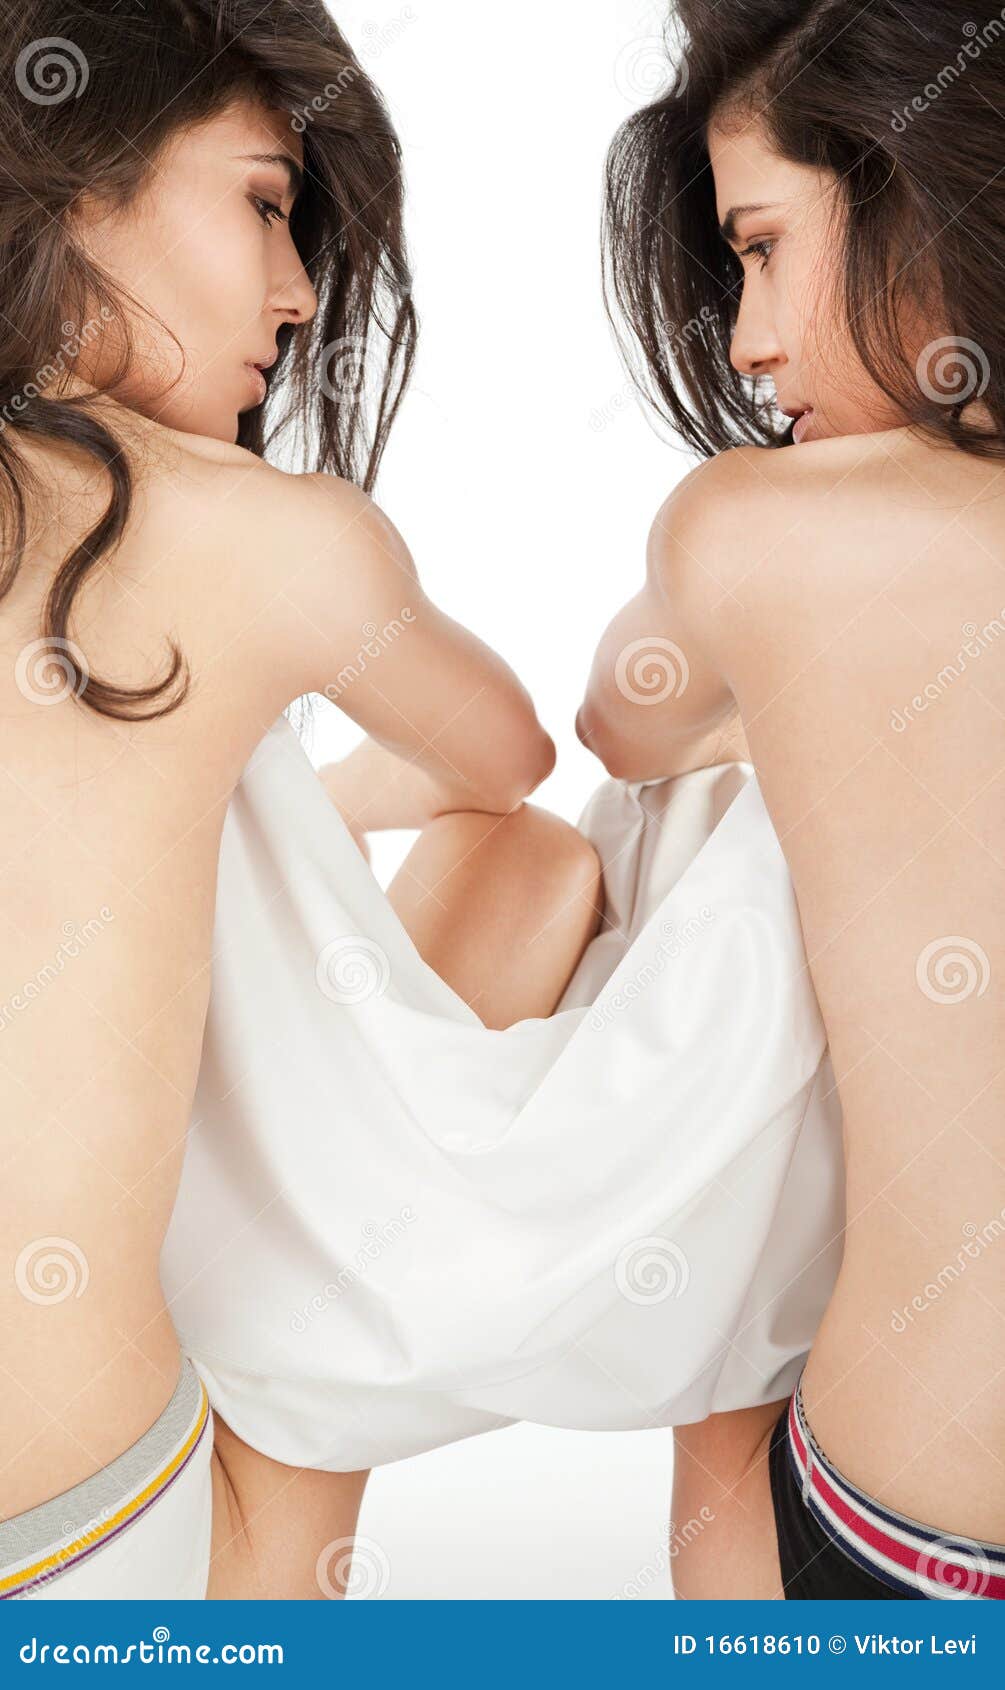 Topless Twin Girls